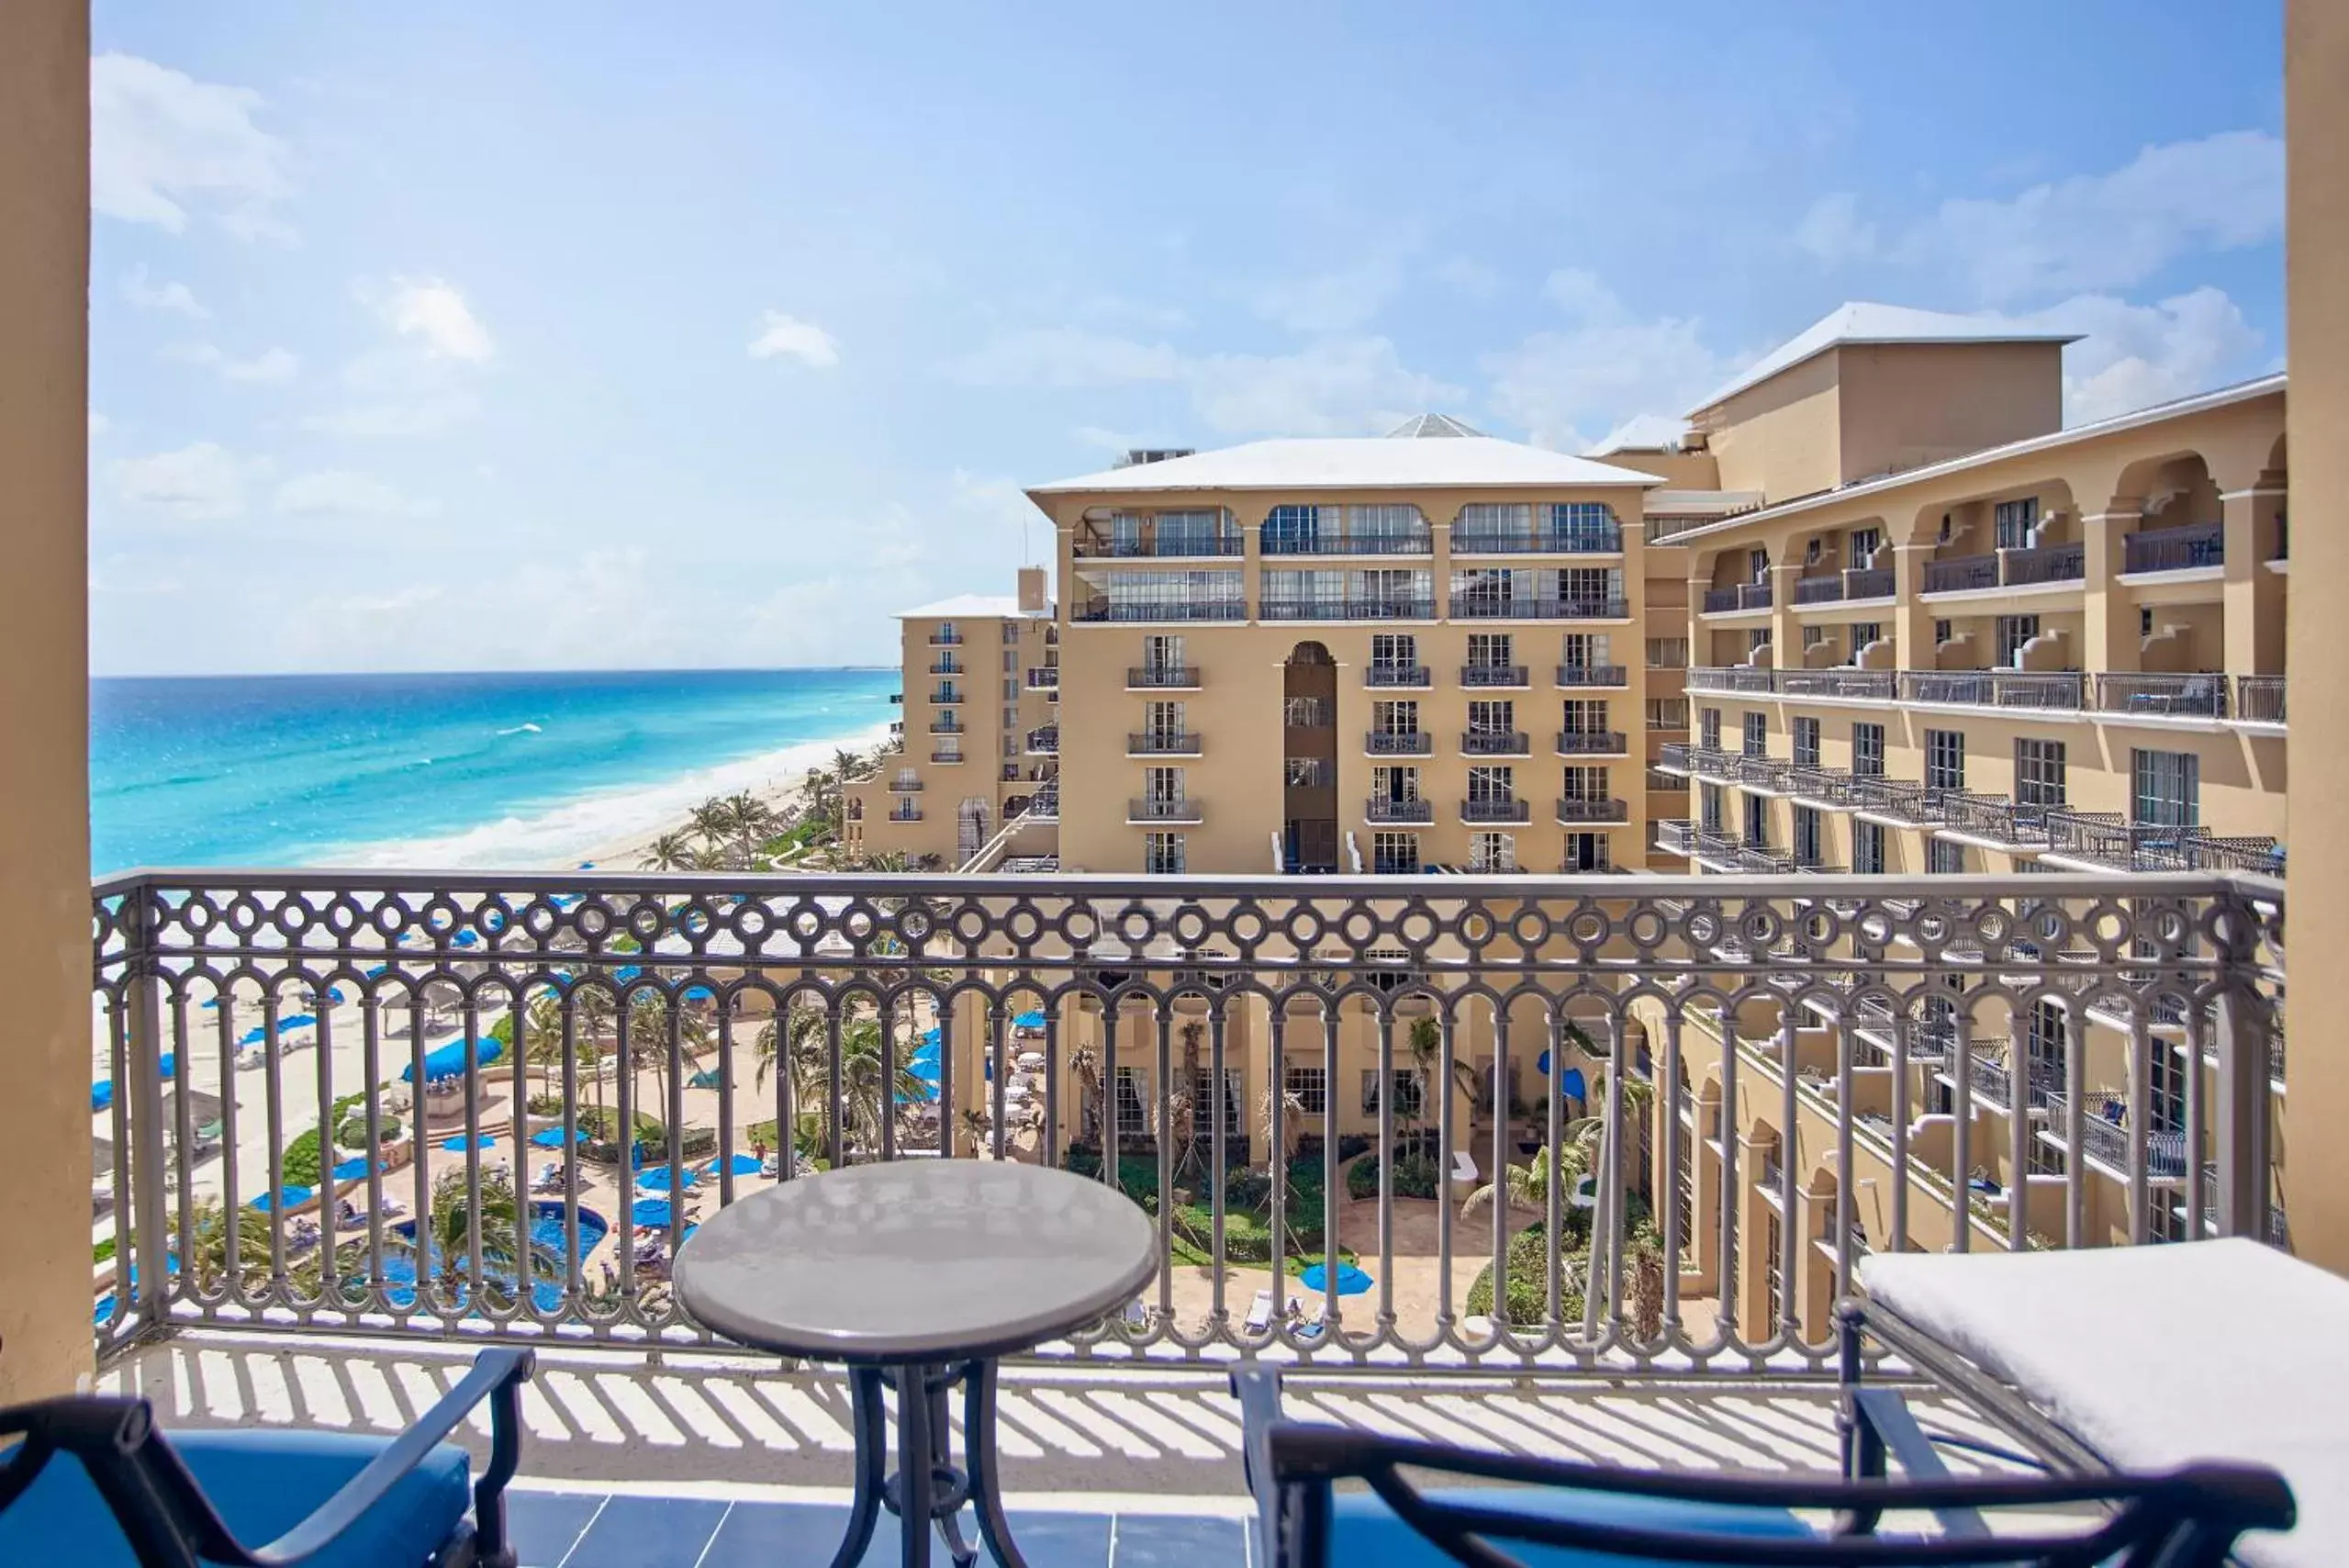 Sea view in Kempinski Hotel Cancun